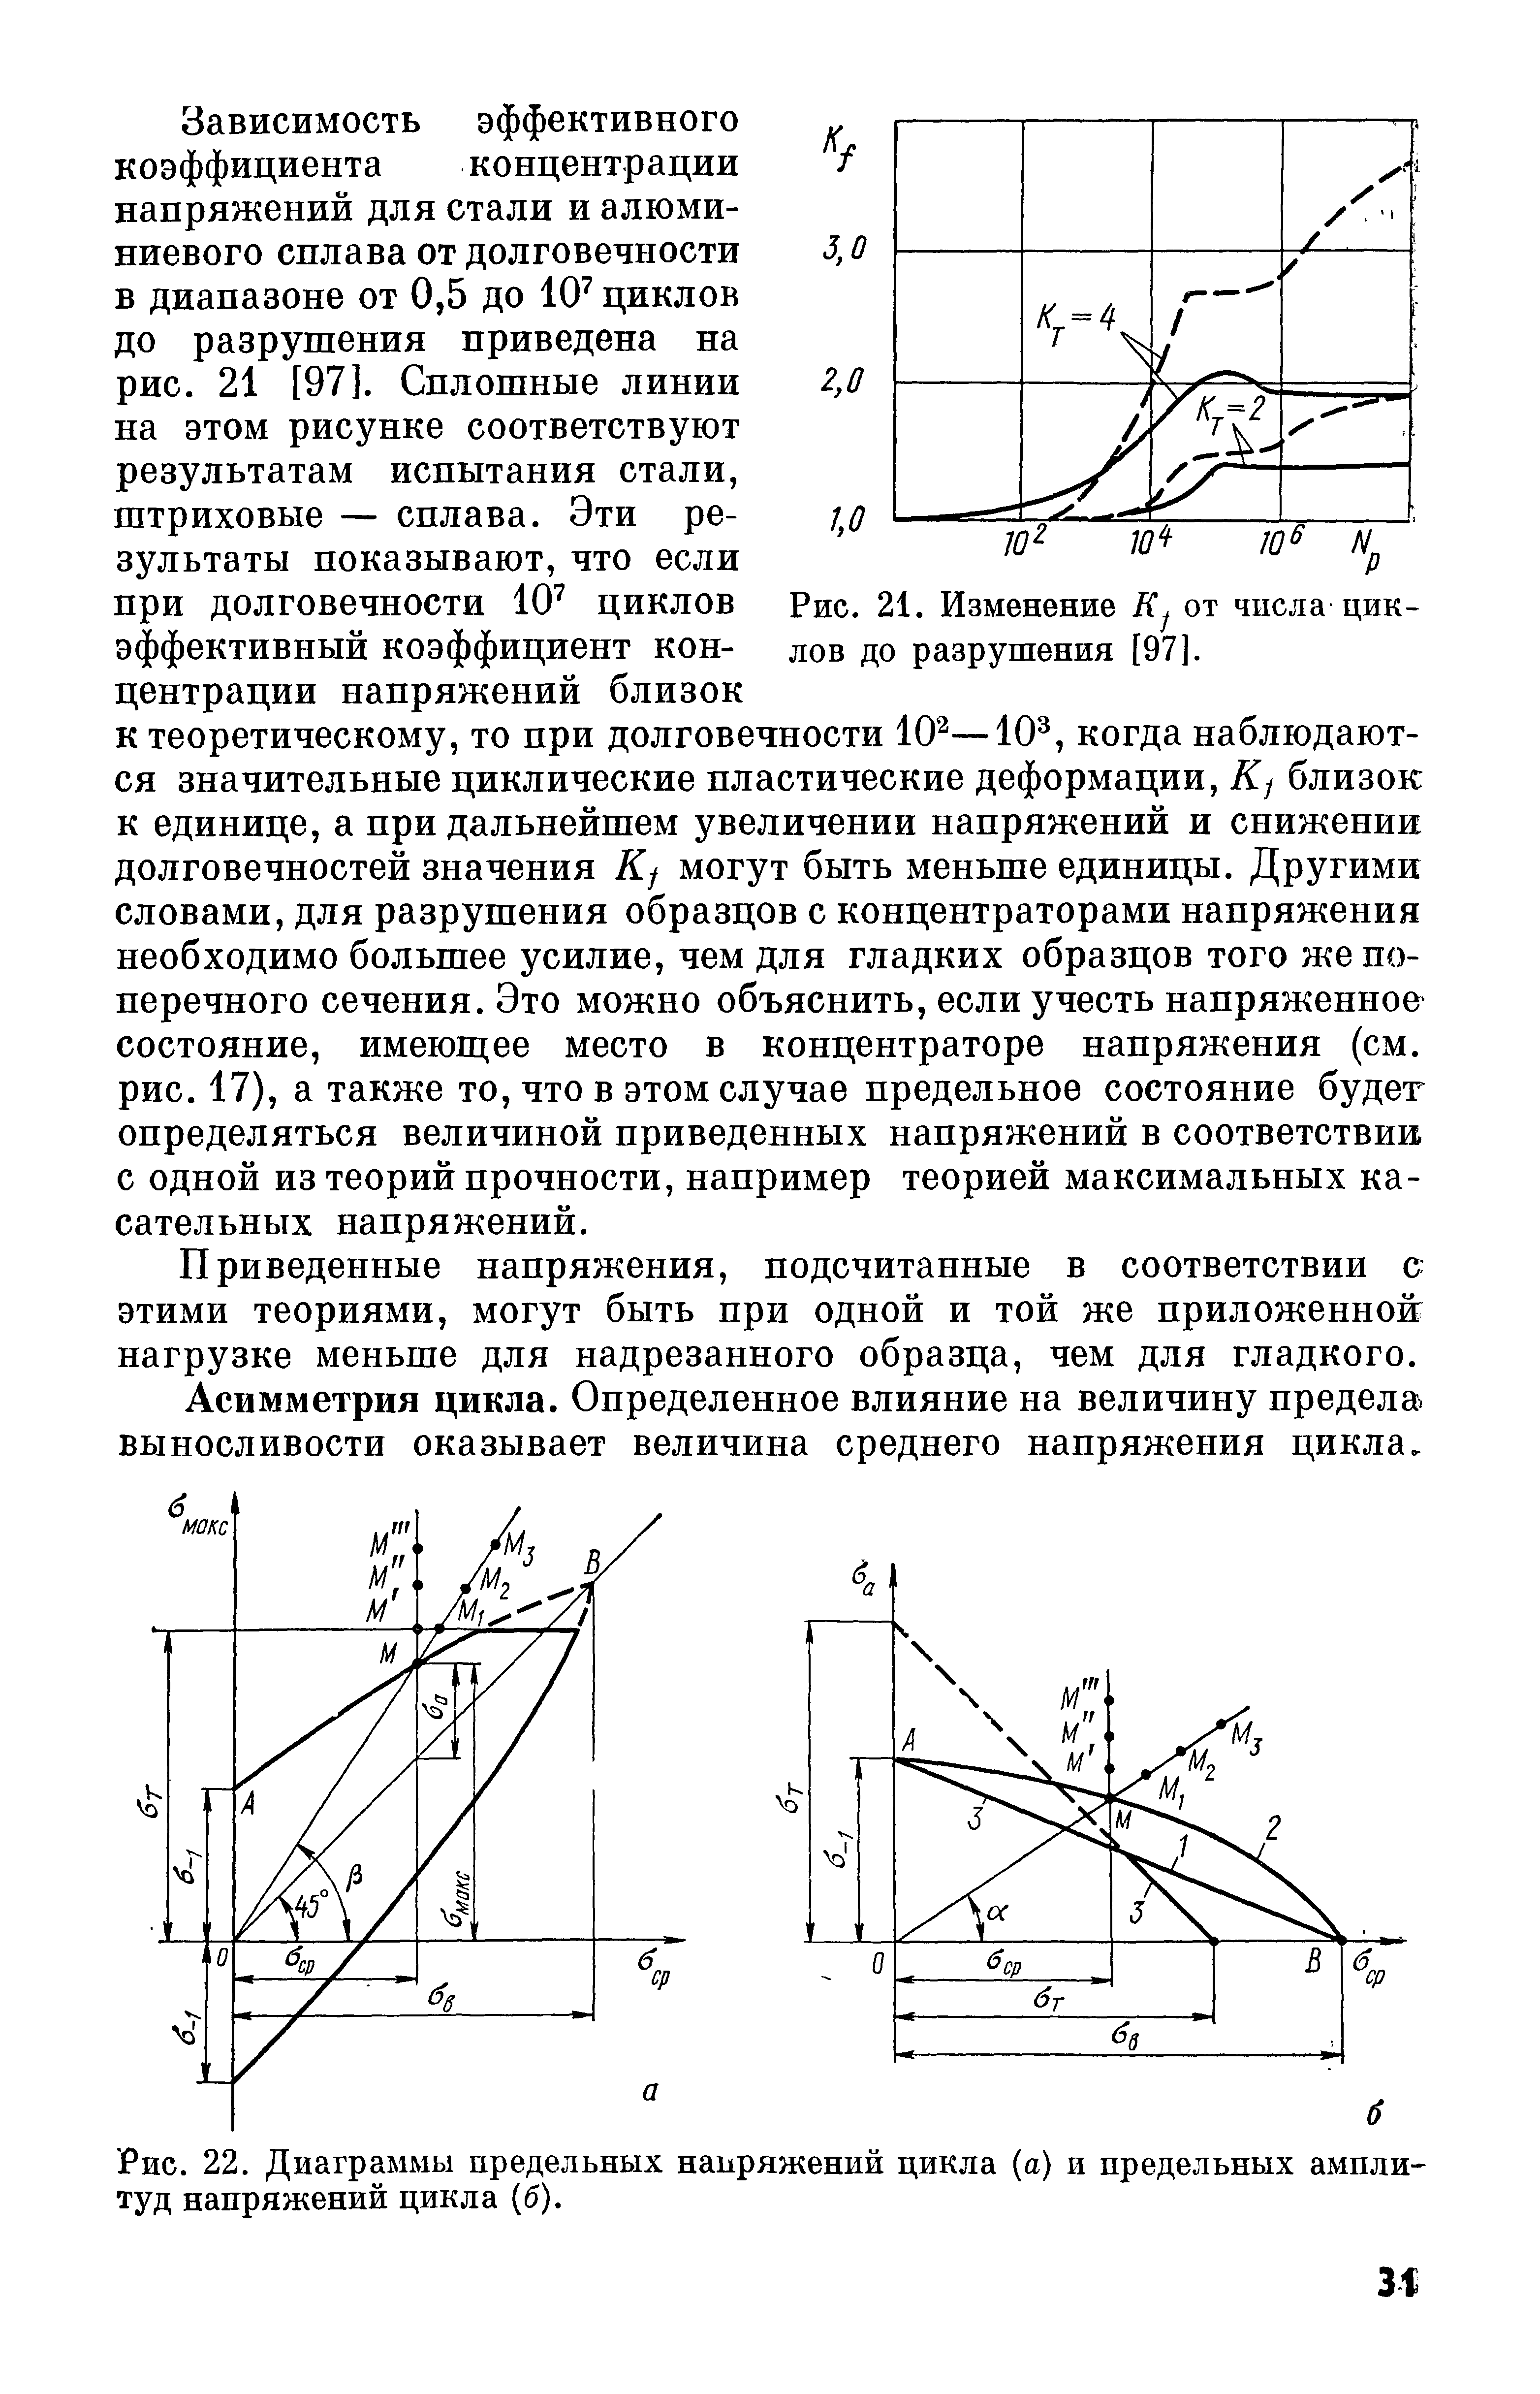 Рис. 22. Диаграммы предельных напряжений цикла (а) и предельных ампли- туд напряжений цикла (б).
